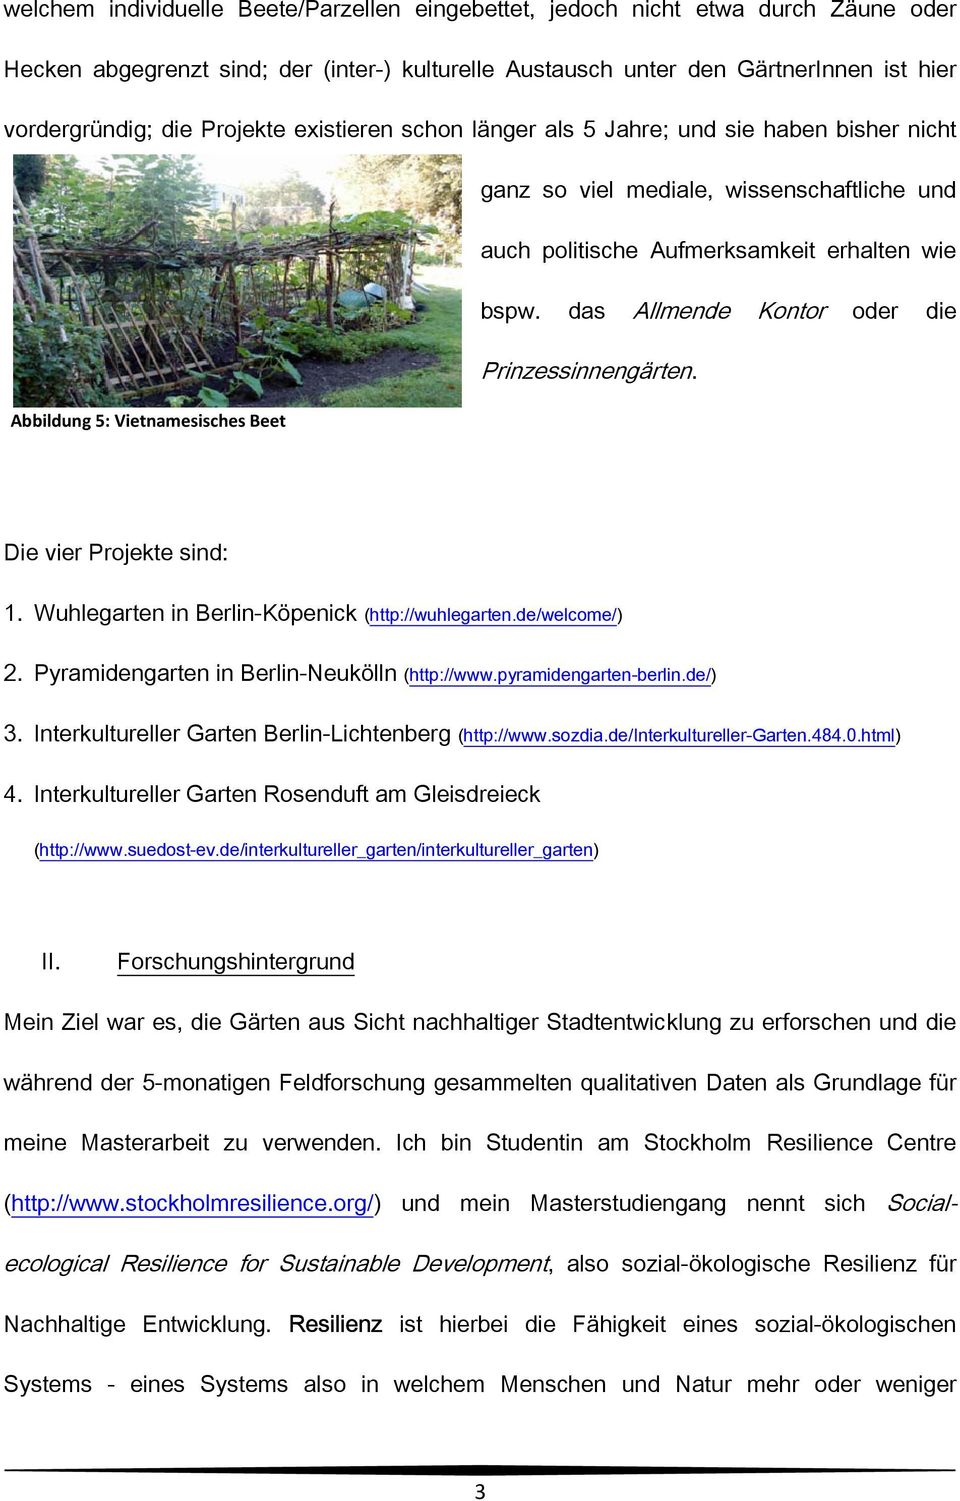 das Allmende Kontor oder die Prinzessinnengärten. Abbildung 5: Vietnamesisches Beet Die vier Projekte sind: 1. Wuhlegarten in Berlin-Köpenick (http://wuhlegarten.de/welcome/) 2.